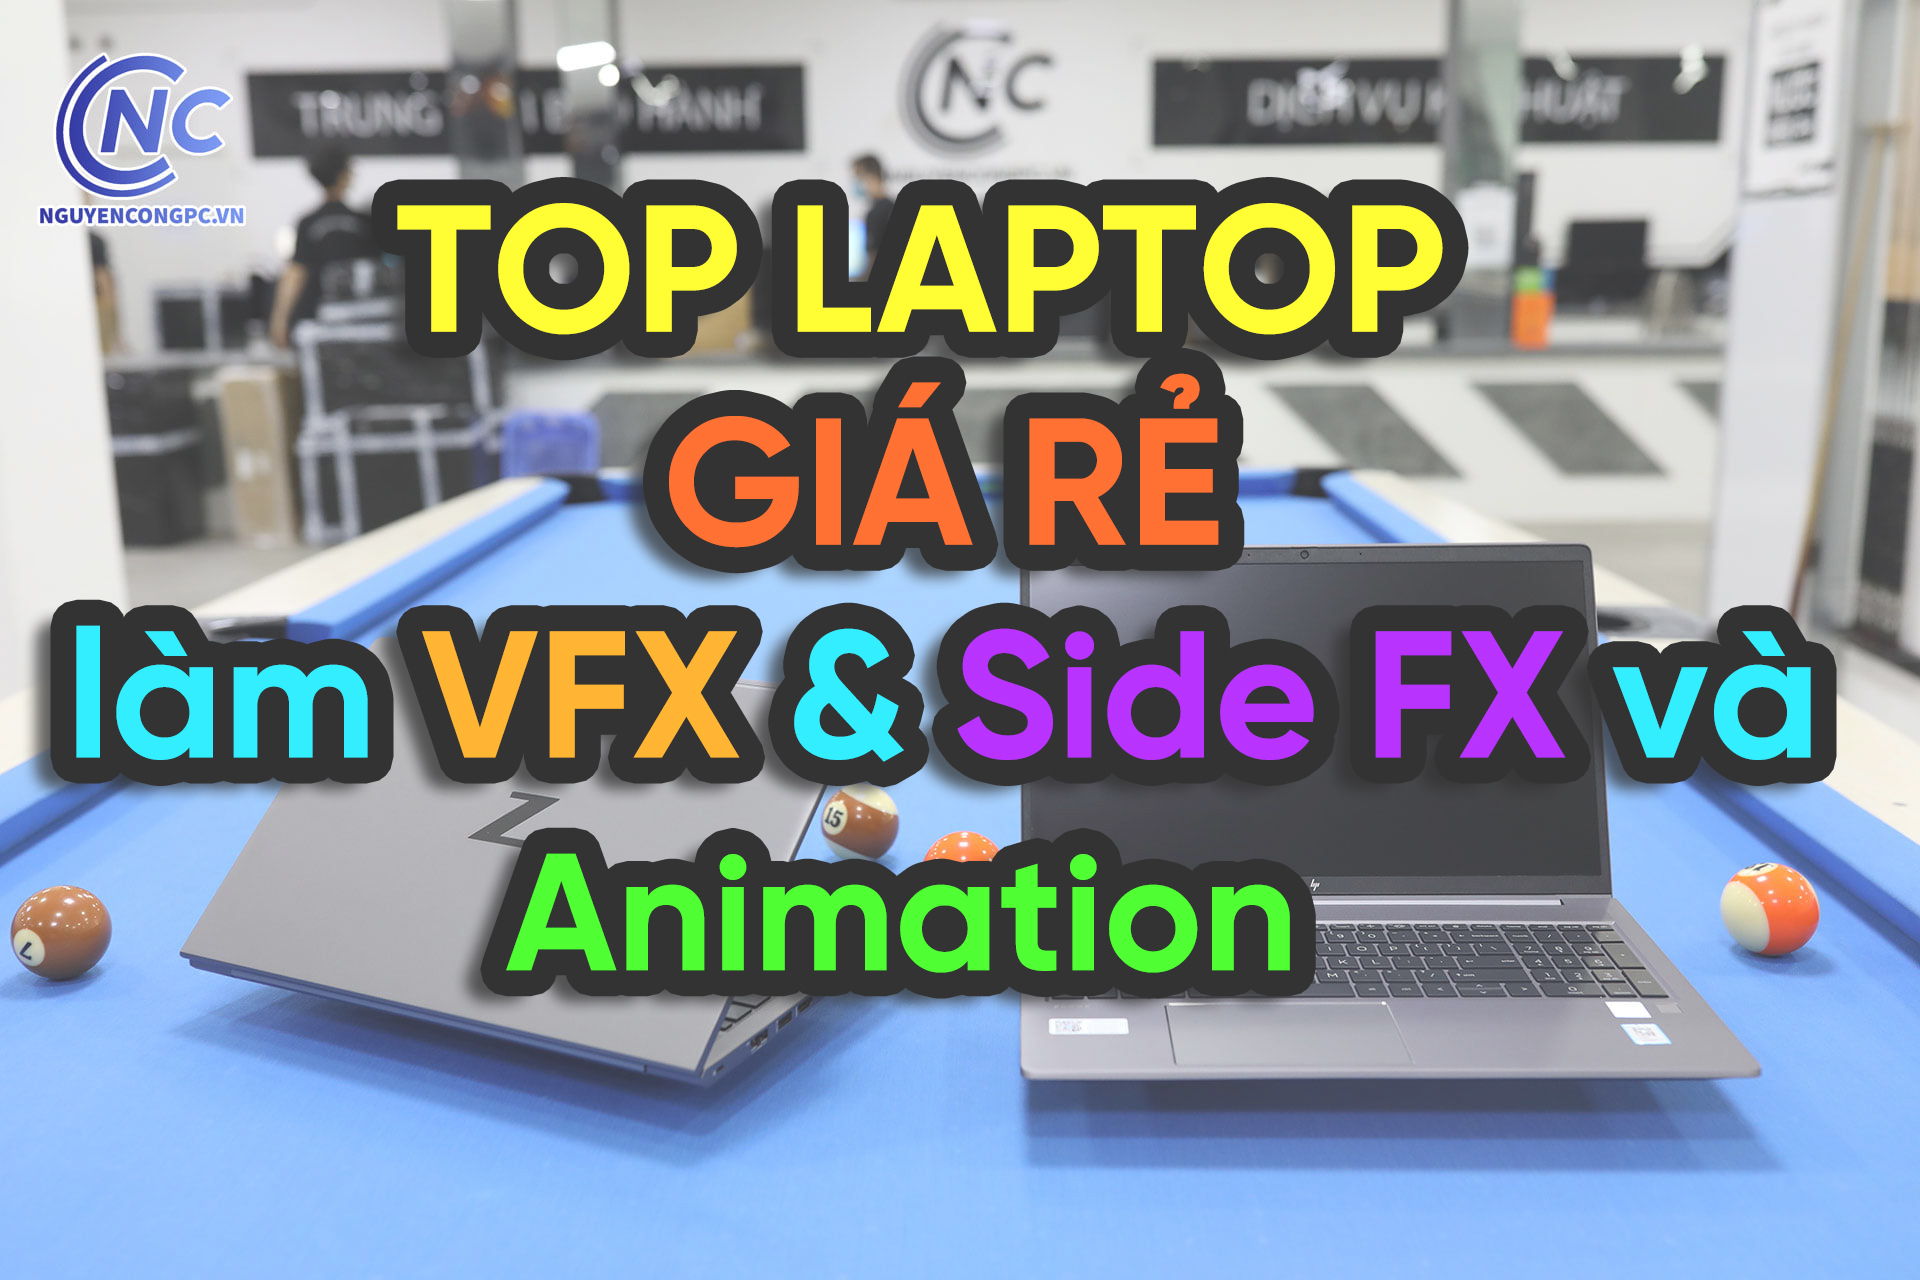 Laptop giá rẻ tối ưu hiệu năng cho dân làm VFX & Side FX